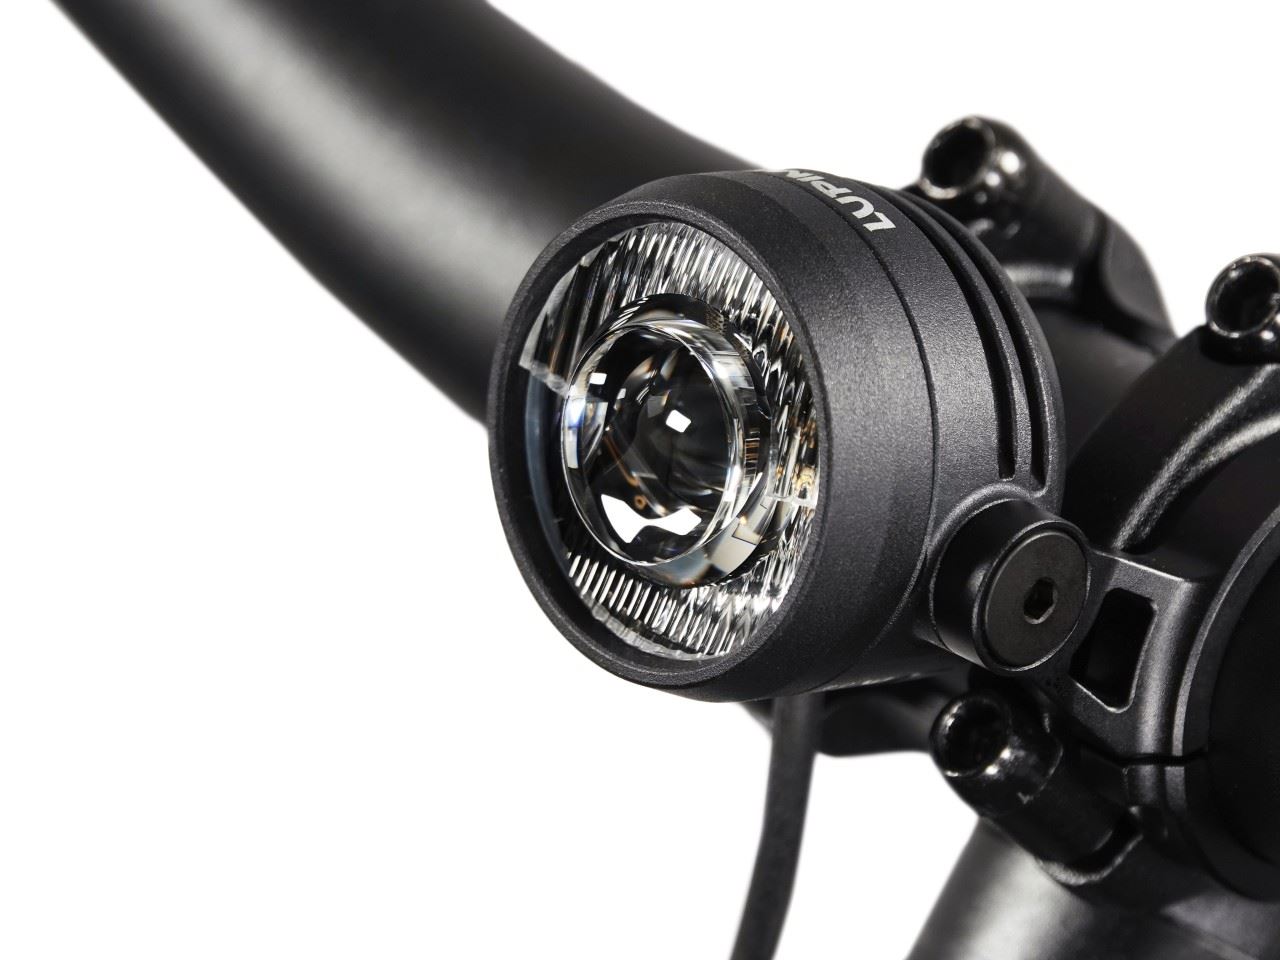 Produktbild von Lupine SL Nano für Shimano E-Bikes, LED Fahrradlampe, Lenkerhalter 31,8mm, Bluetooth Fernbedienung, 900 Lumen